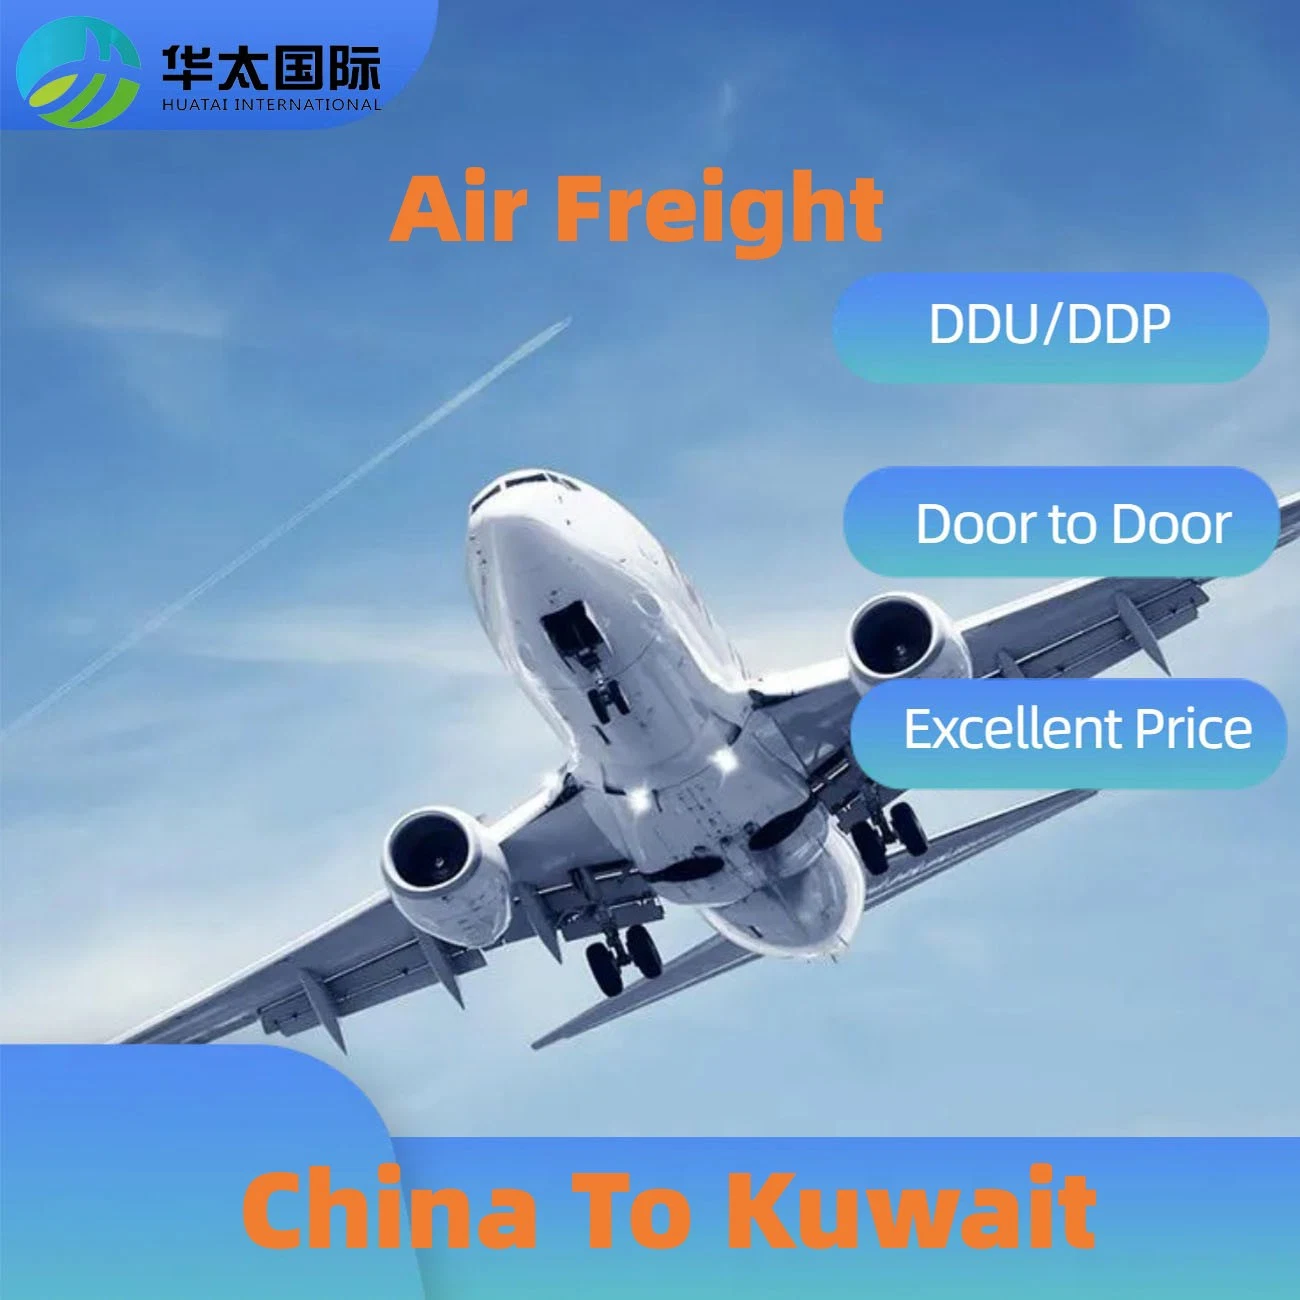 الشحن الجوي من الصين إلى الكويت النقل الدولي اللوجستي